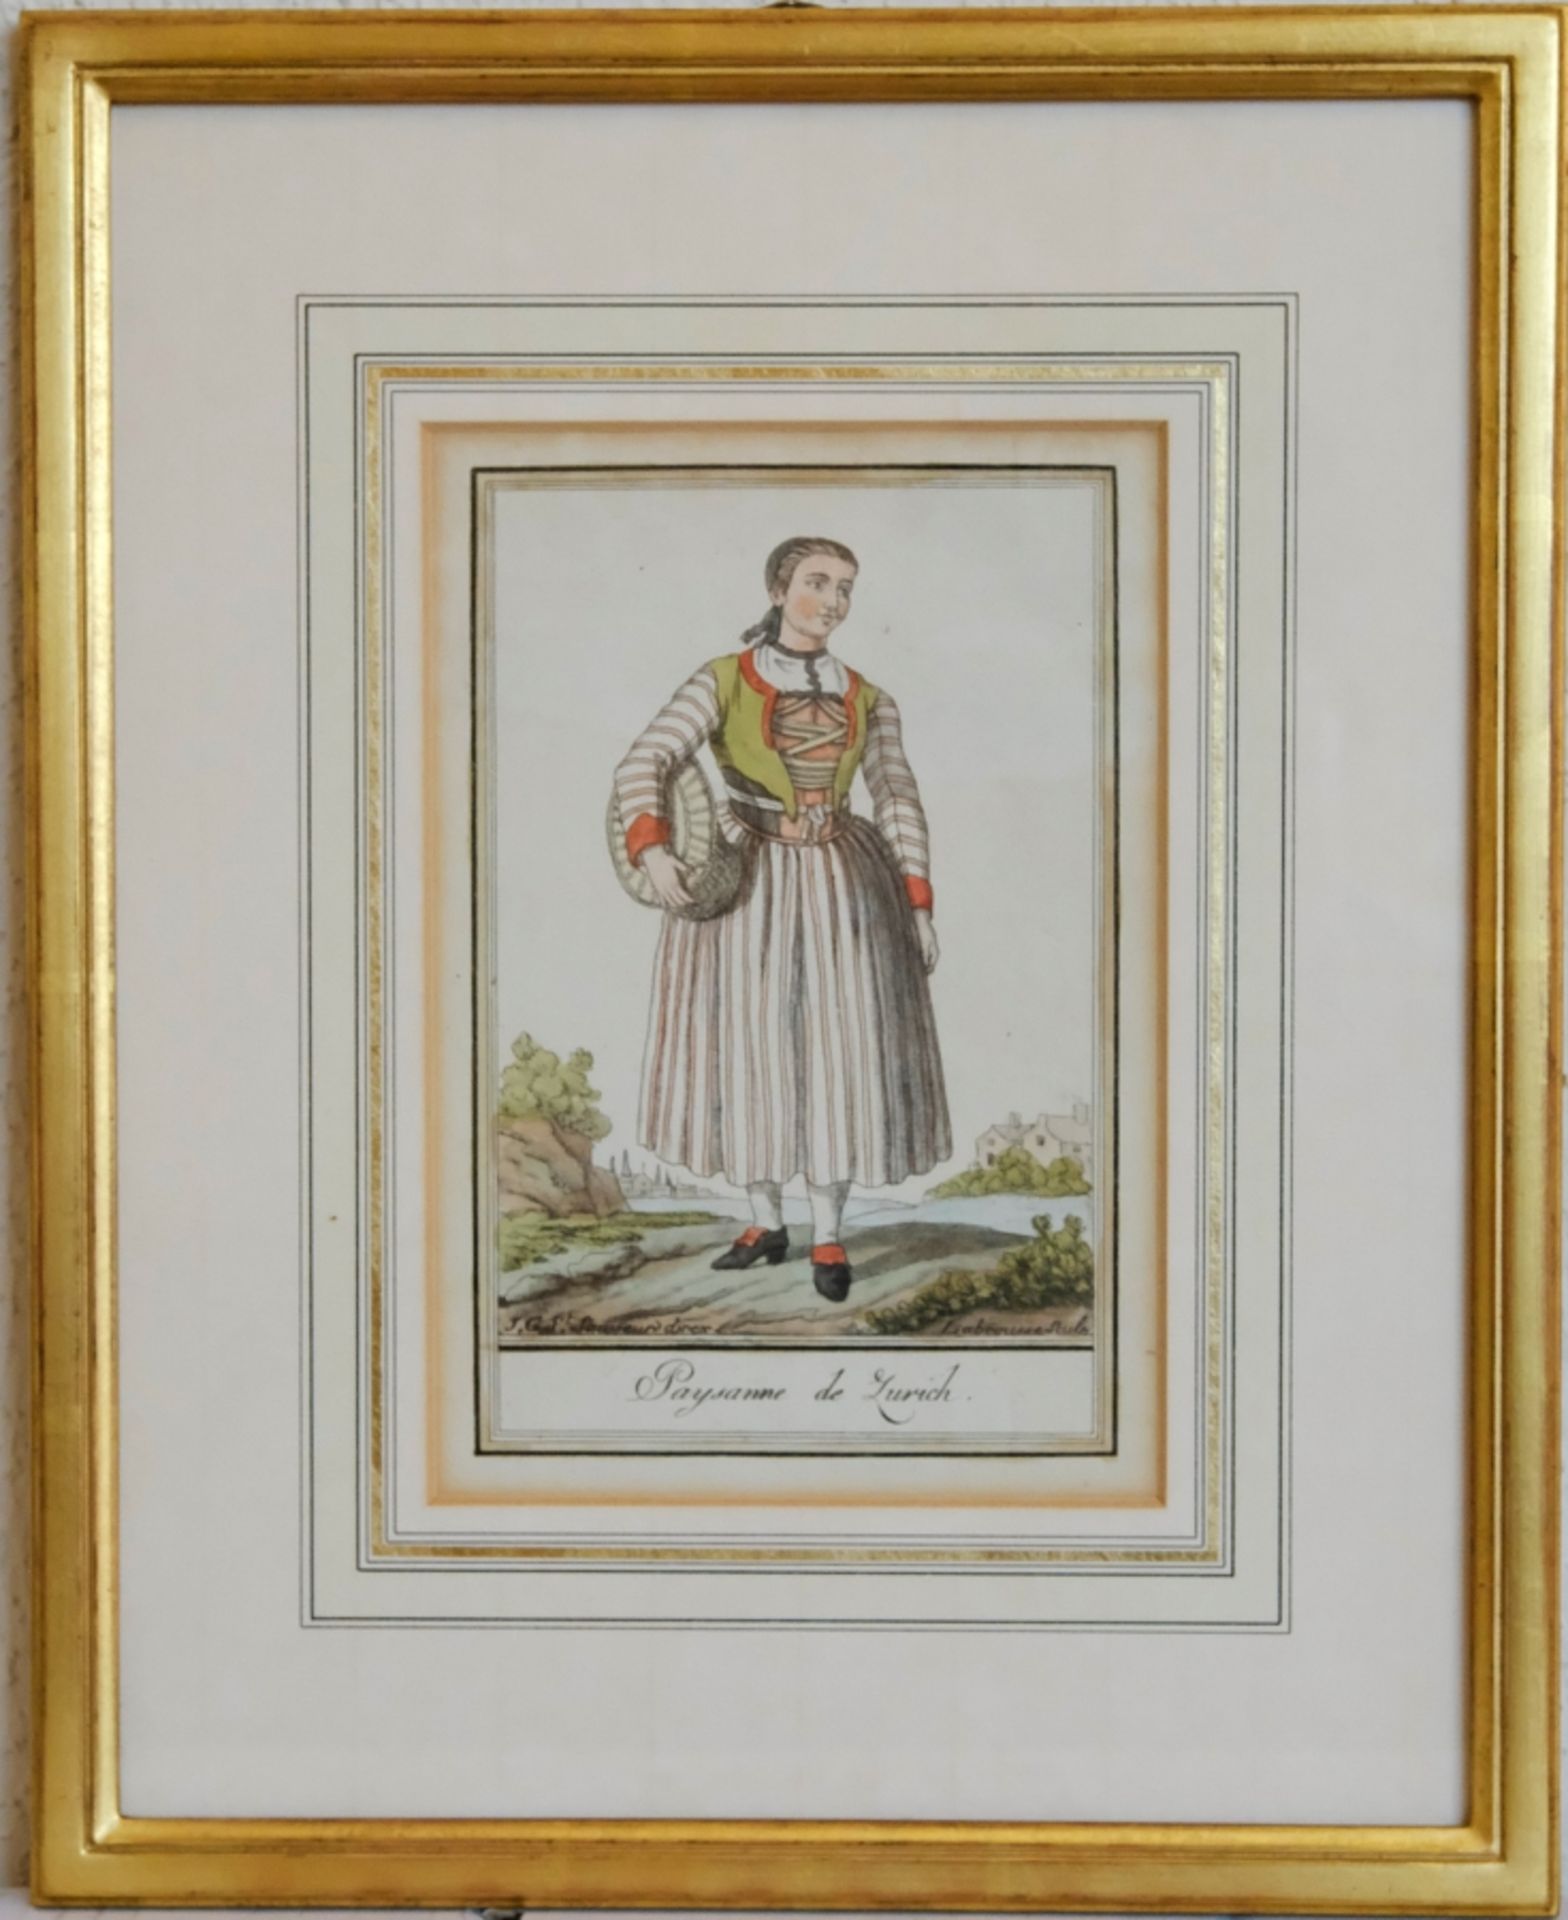 ZÜRICHERIN, "Paysanne de Zurich", Frau in traditioneller Tracht mit Korb unter dem Arm, kleiner Lan - Bild 2 aus 3